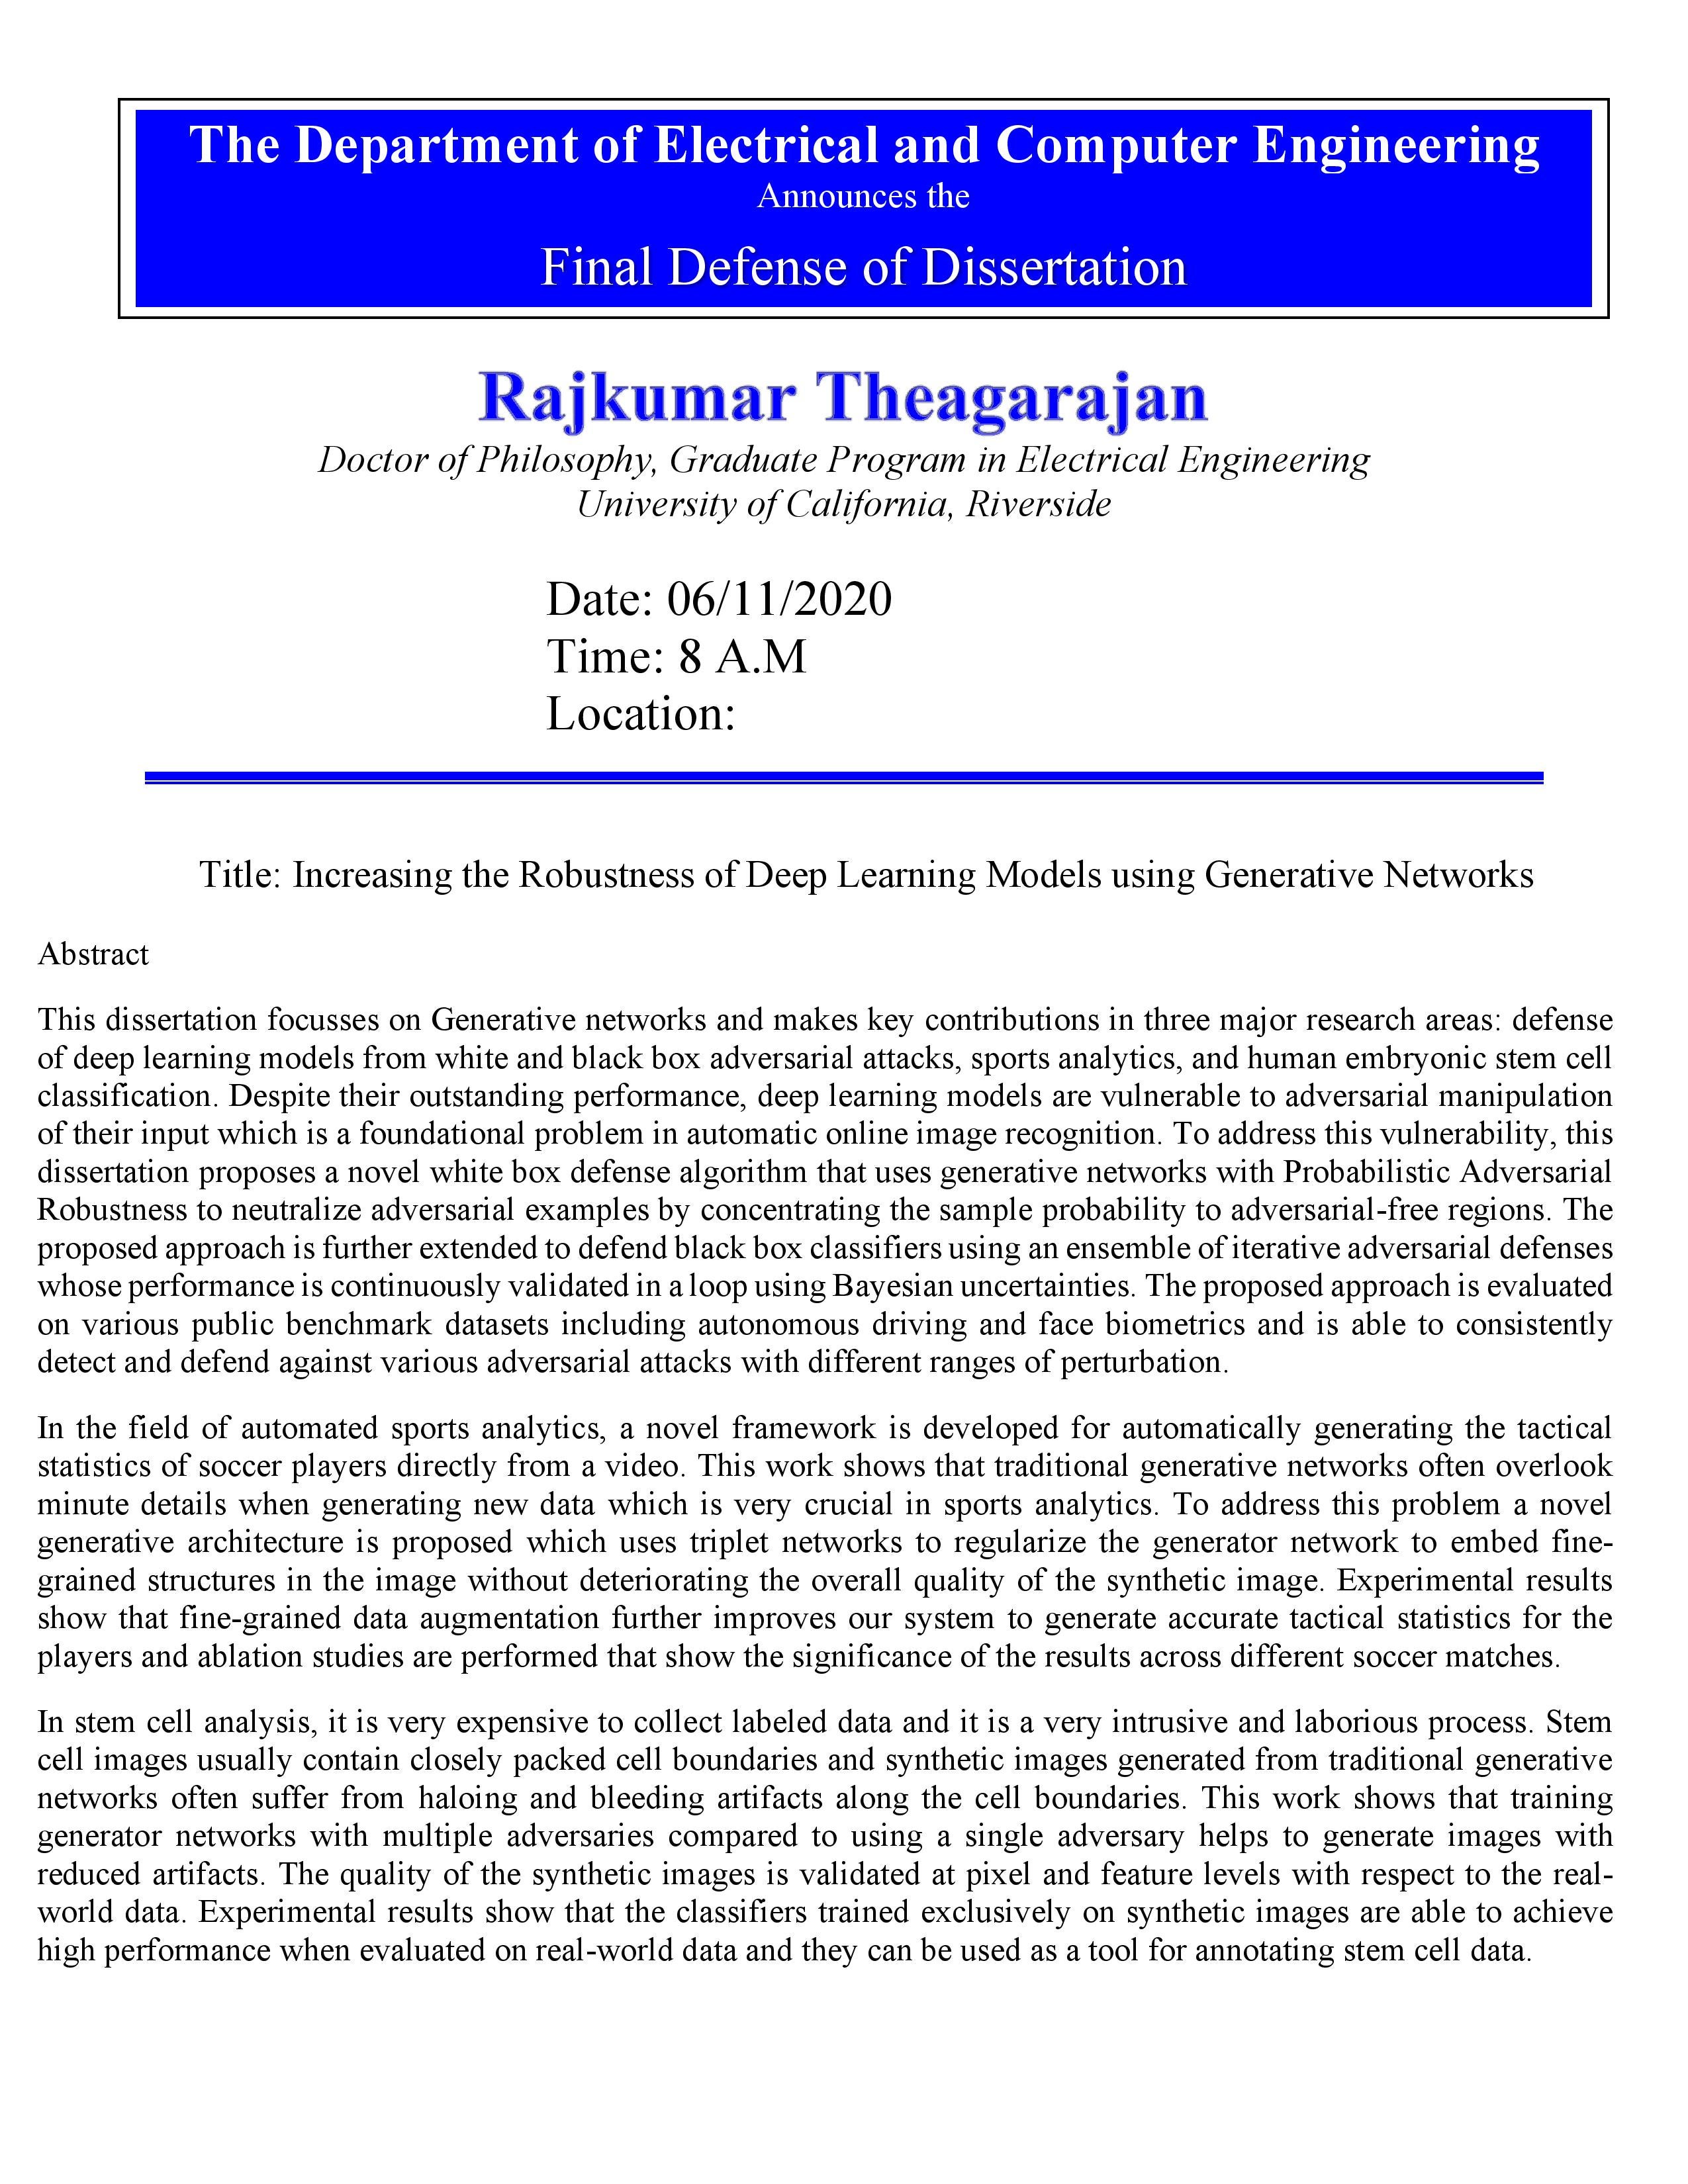 THEAGARAJAN, Rajkumar Dissertation Defense Flyer